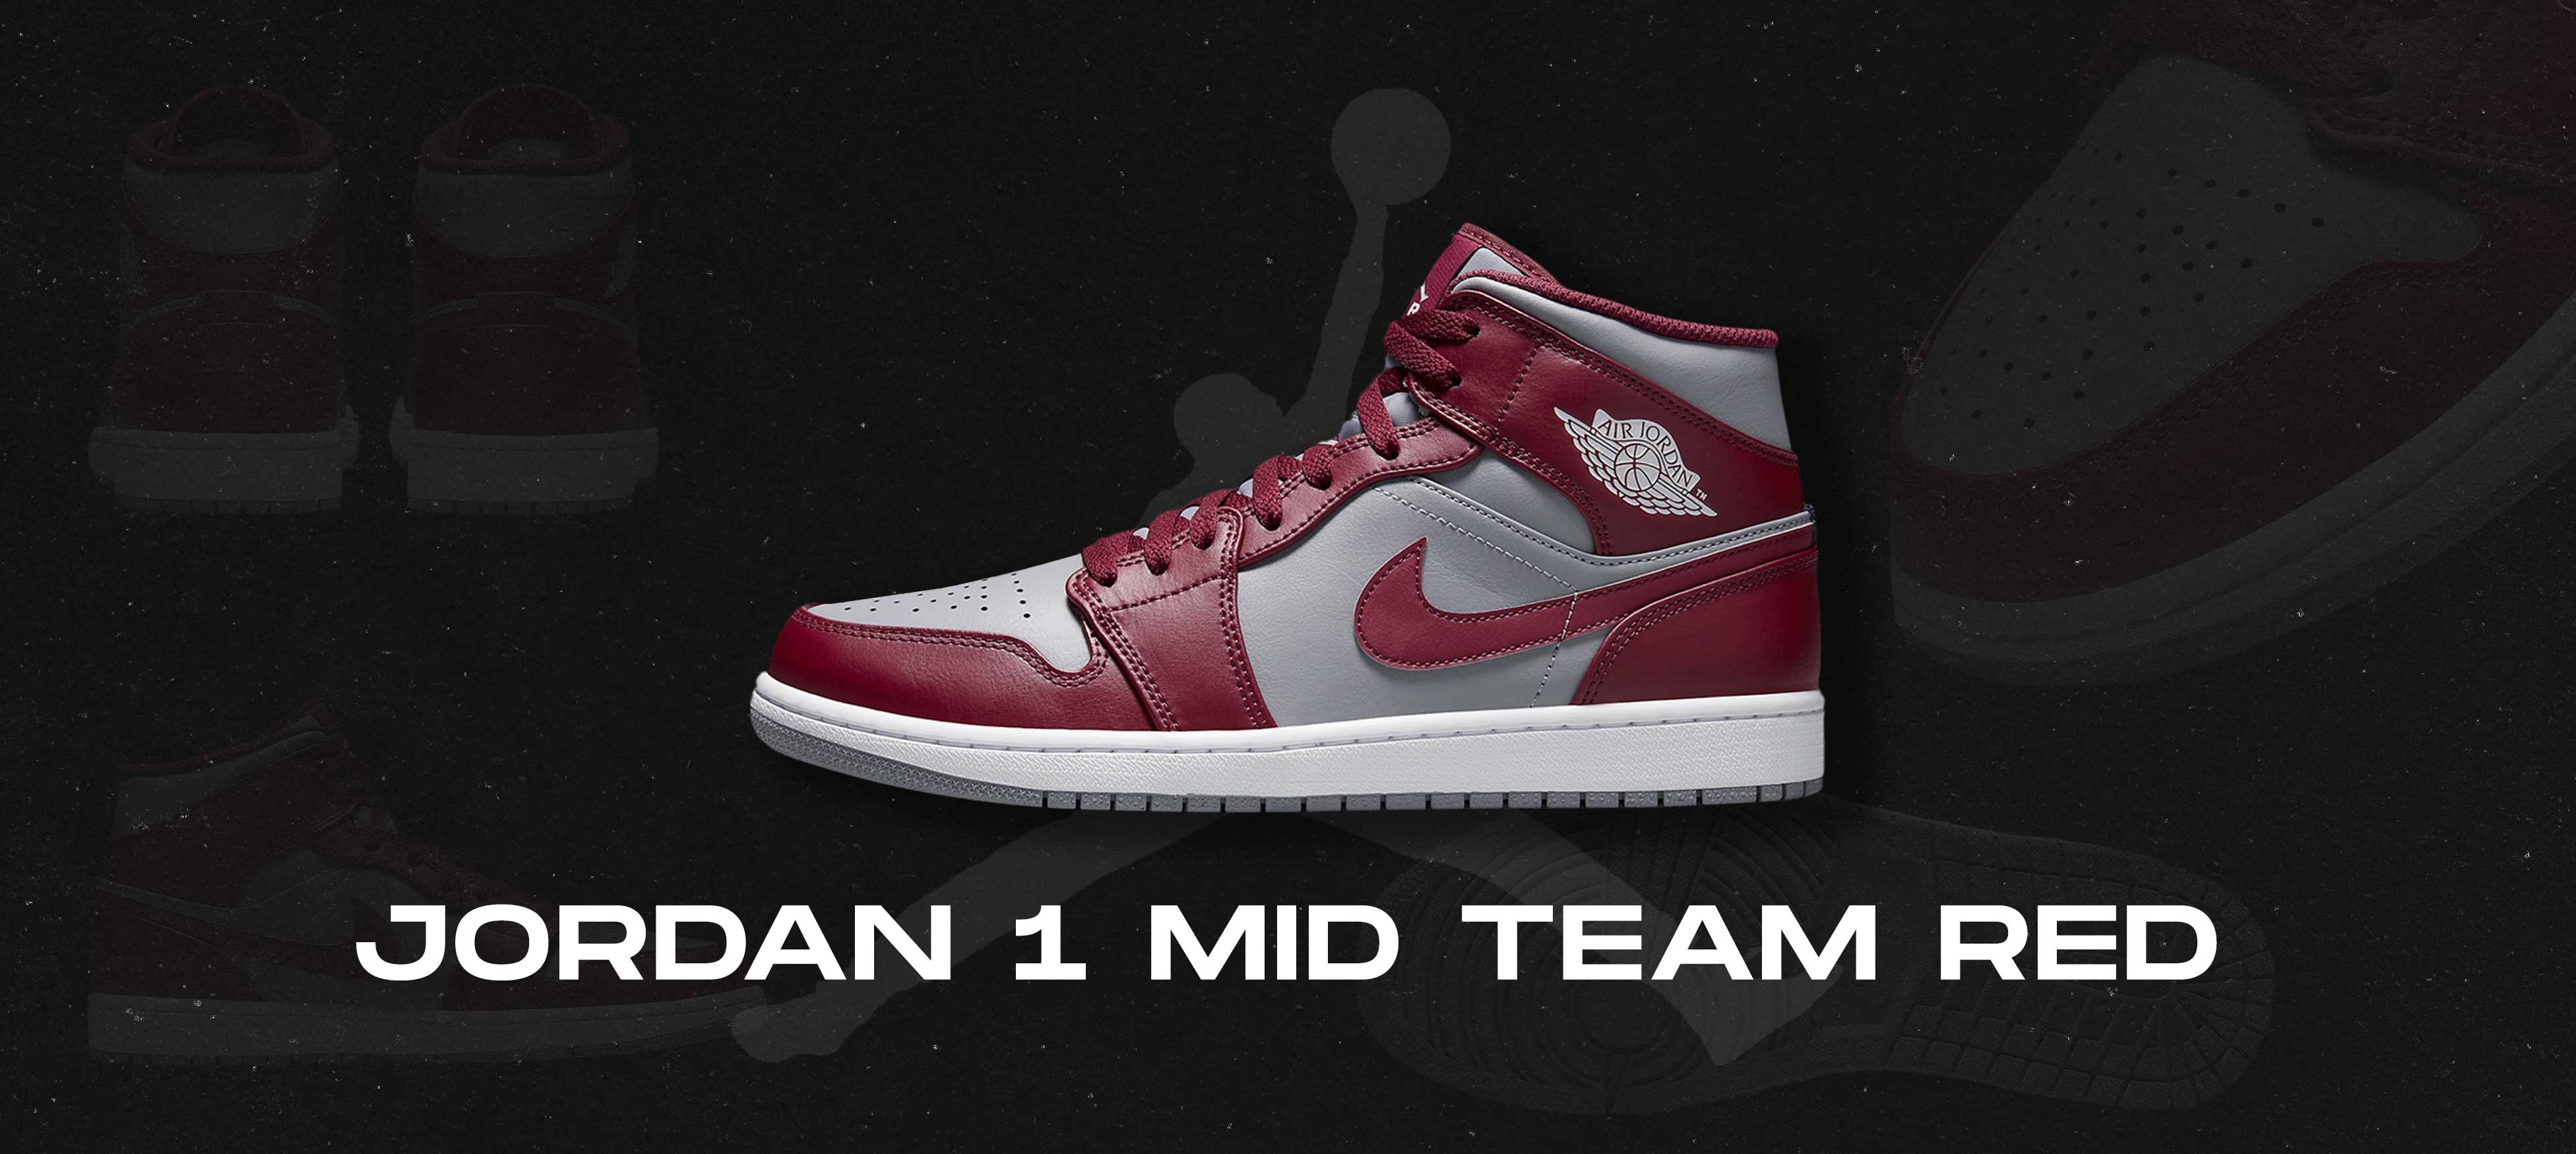 Jordan 1 Mid Team Red